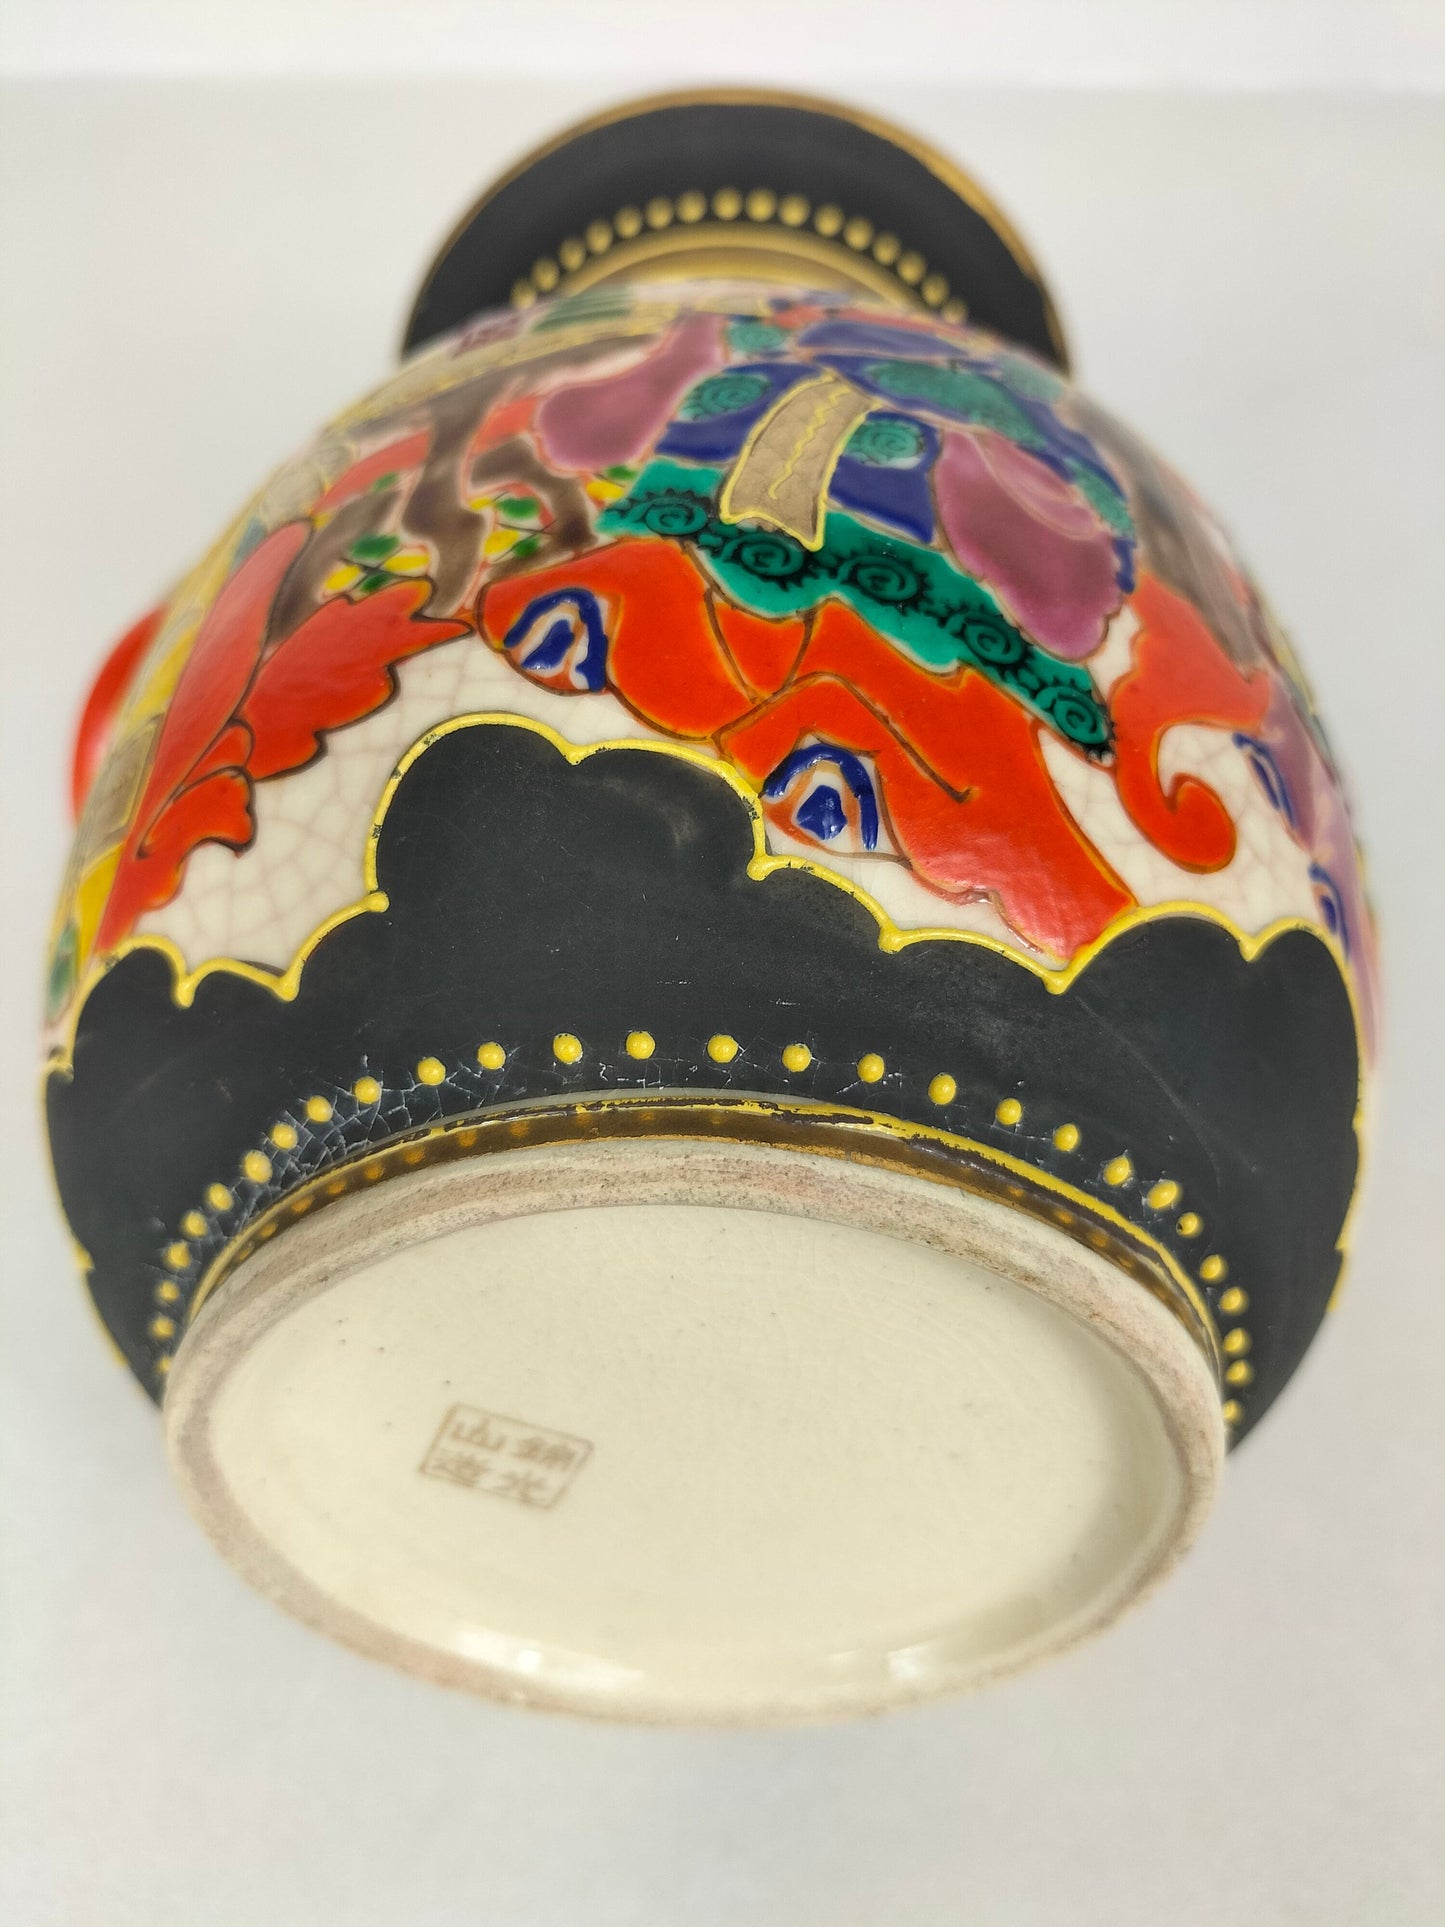 装饰有人物和花朵的古董日本萨摩花瓶 // 日本 - 20 世纪初